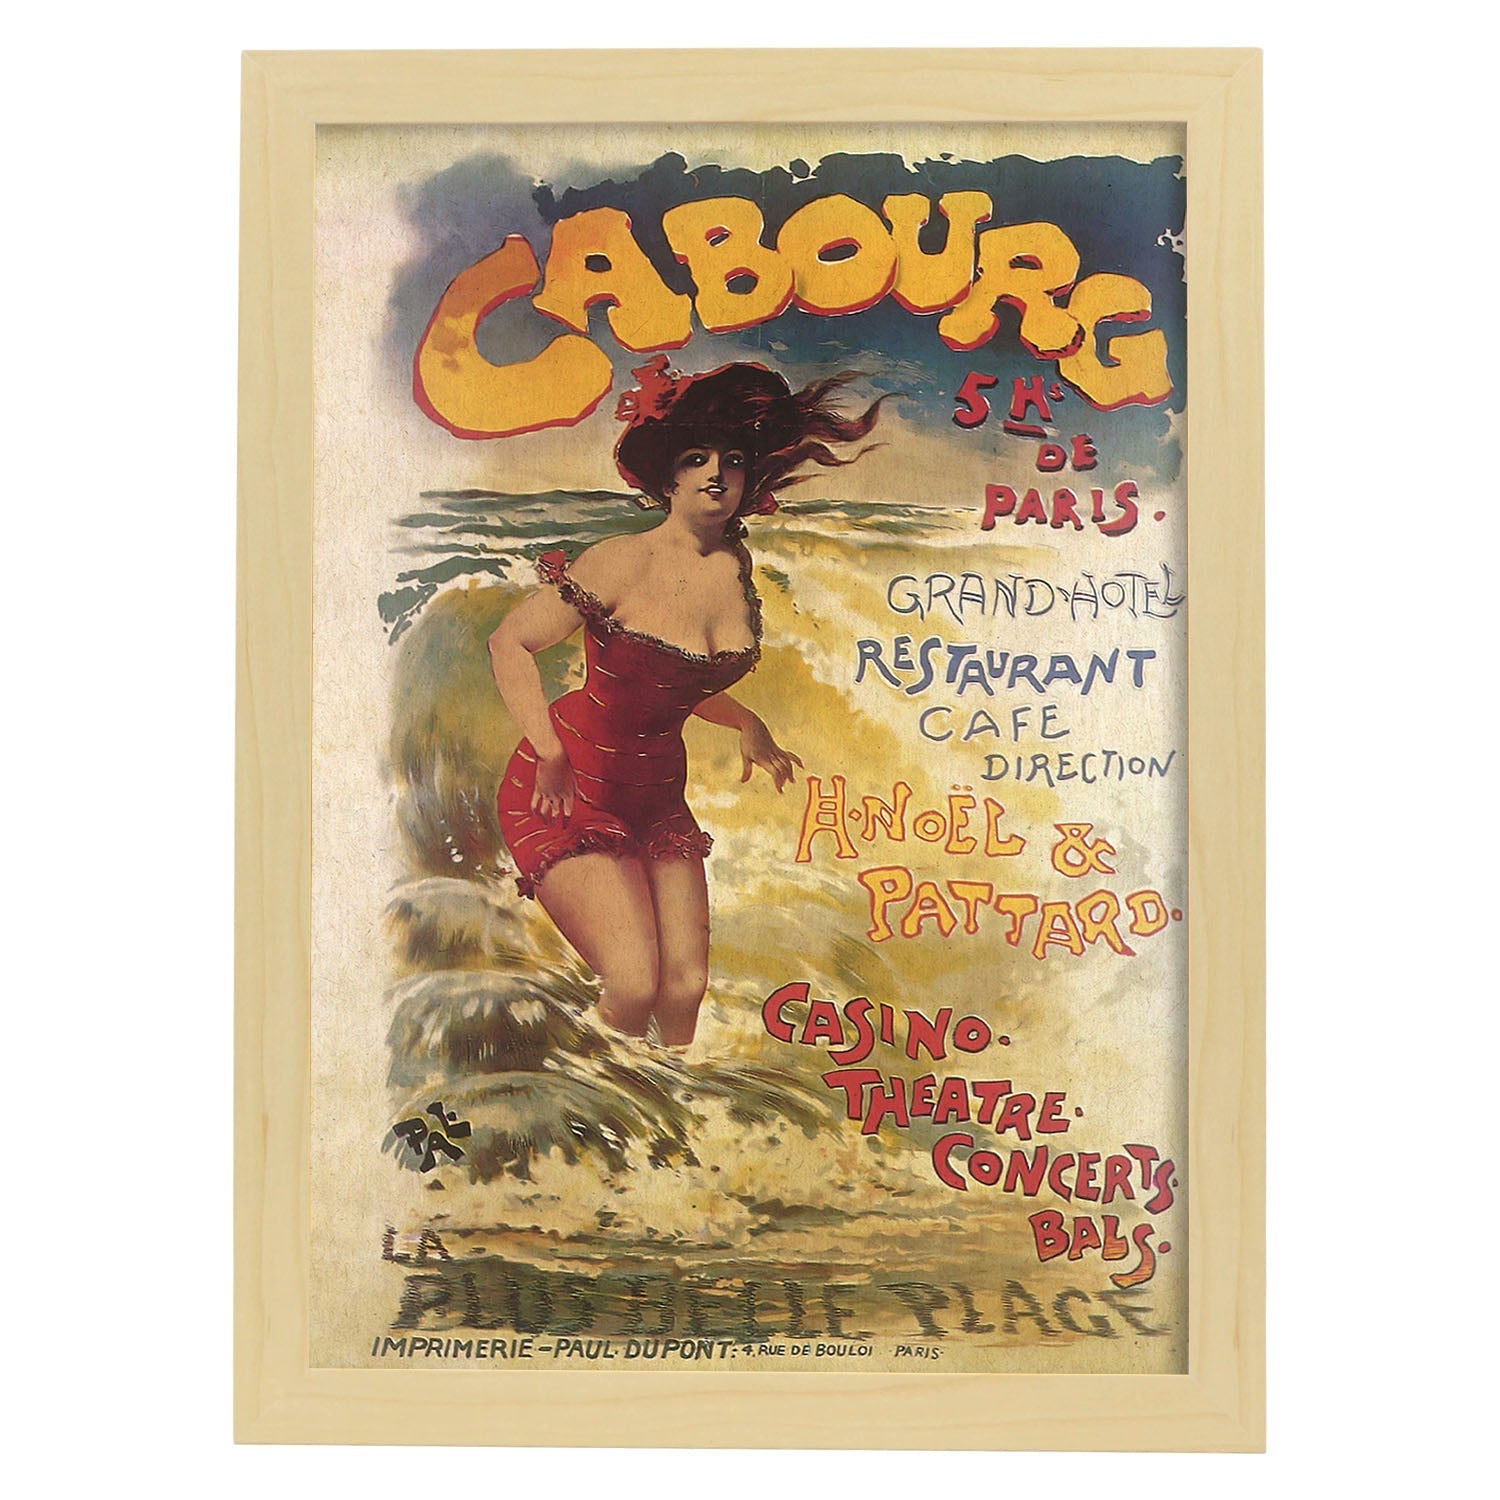 Poster vintage. Cartel vintage anuncio Casino Cabourg de Paris.-Artwork-Nacnic-A4-Marco Madera clara-Nacnic Estudio SL